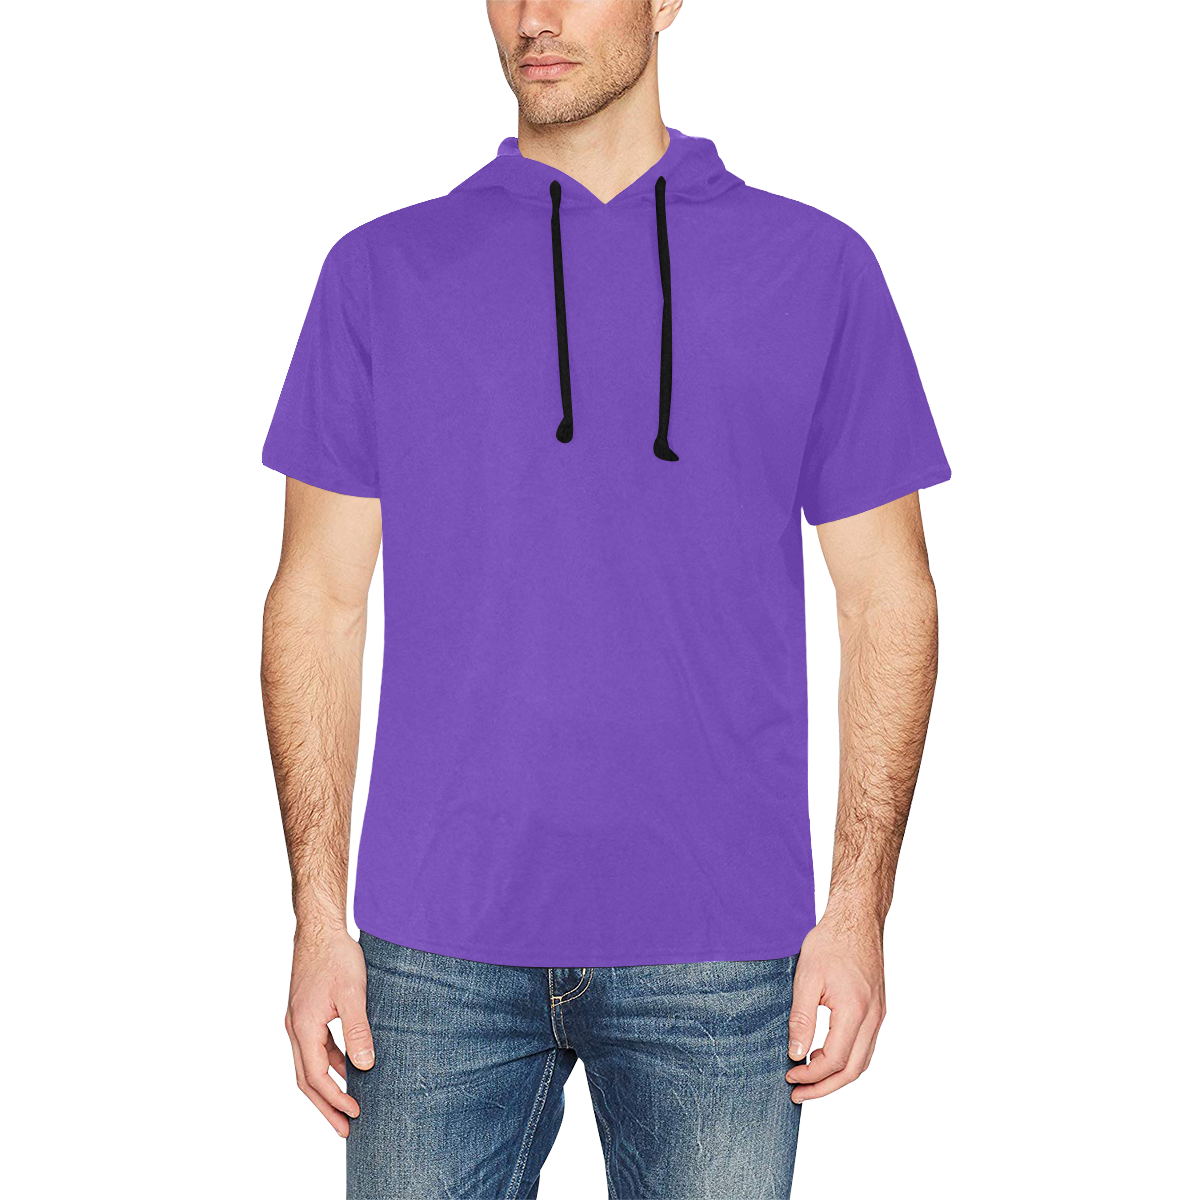 MBF hoodie purple All Over Print Short Sleeve Hoodie for Men (Model H32)